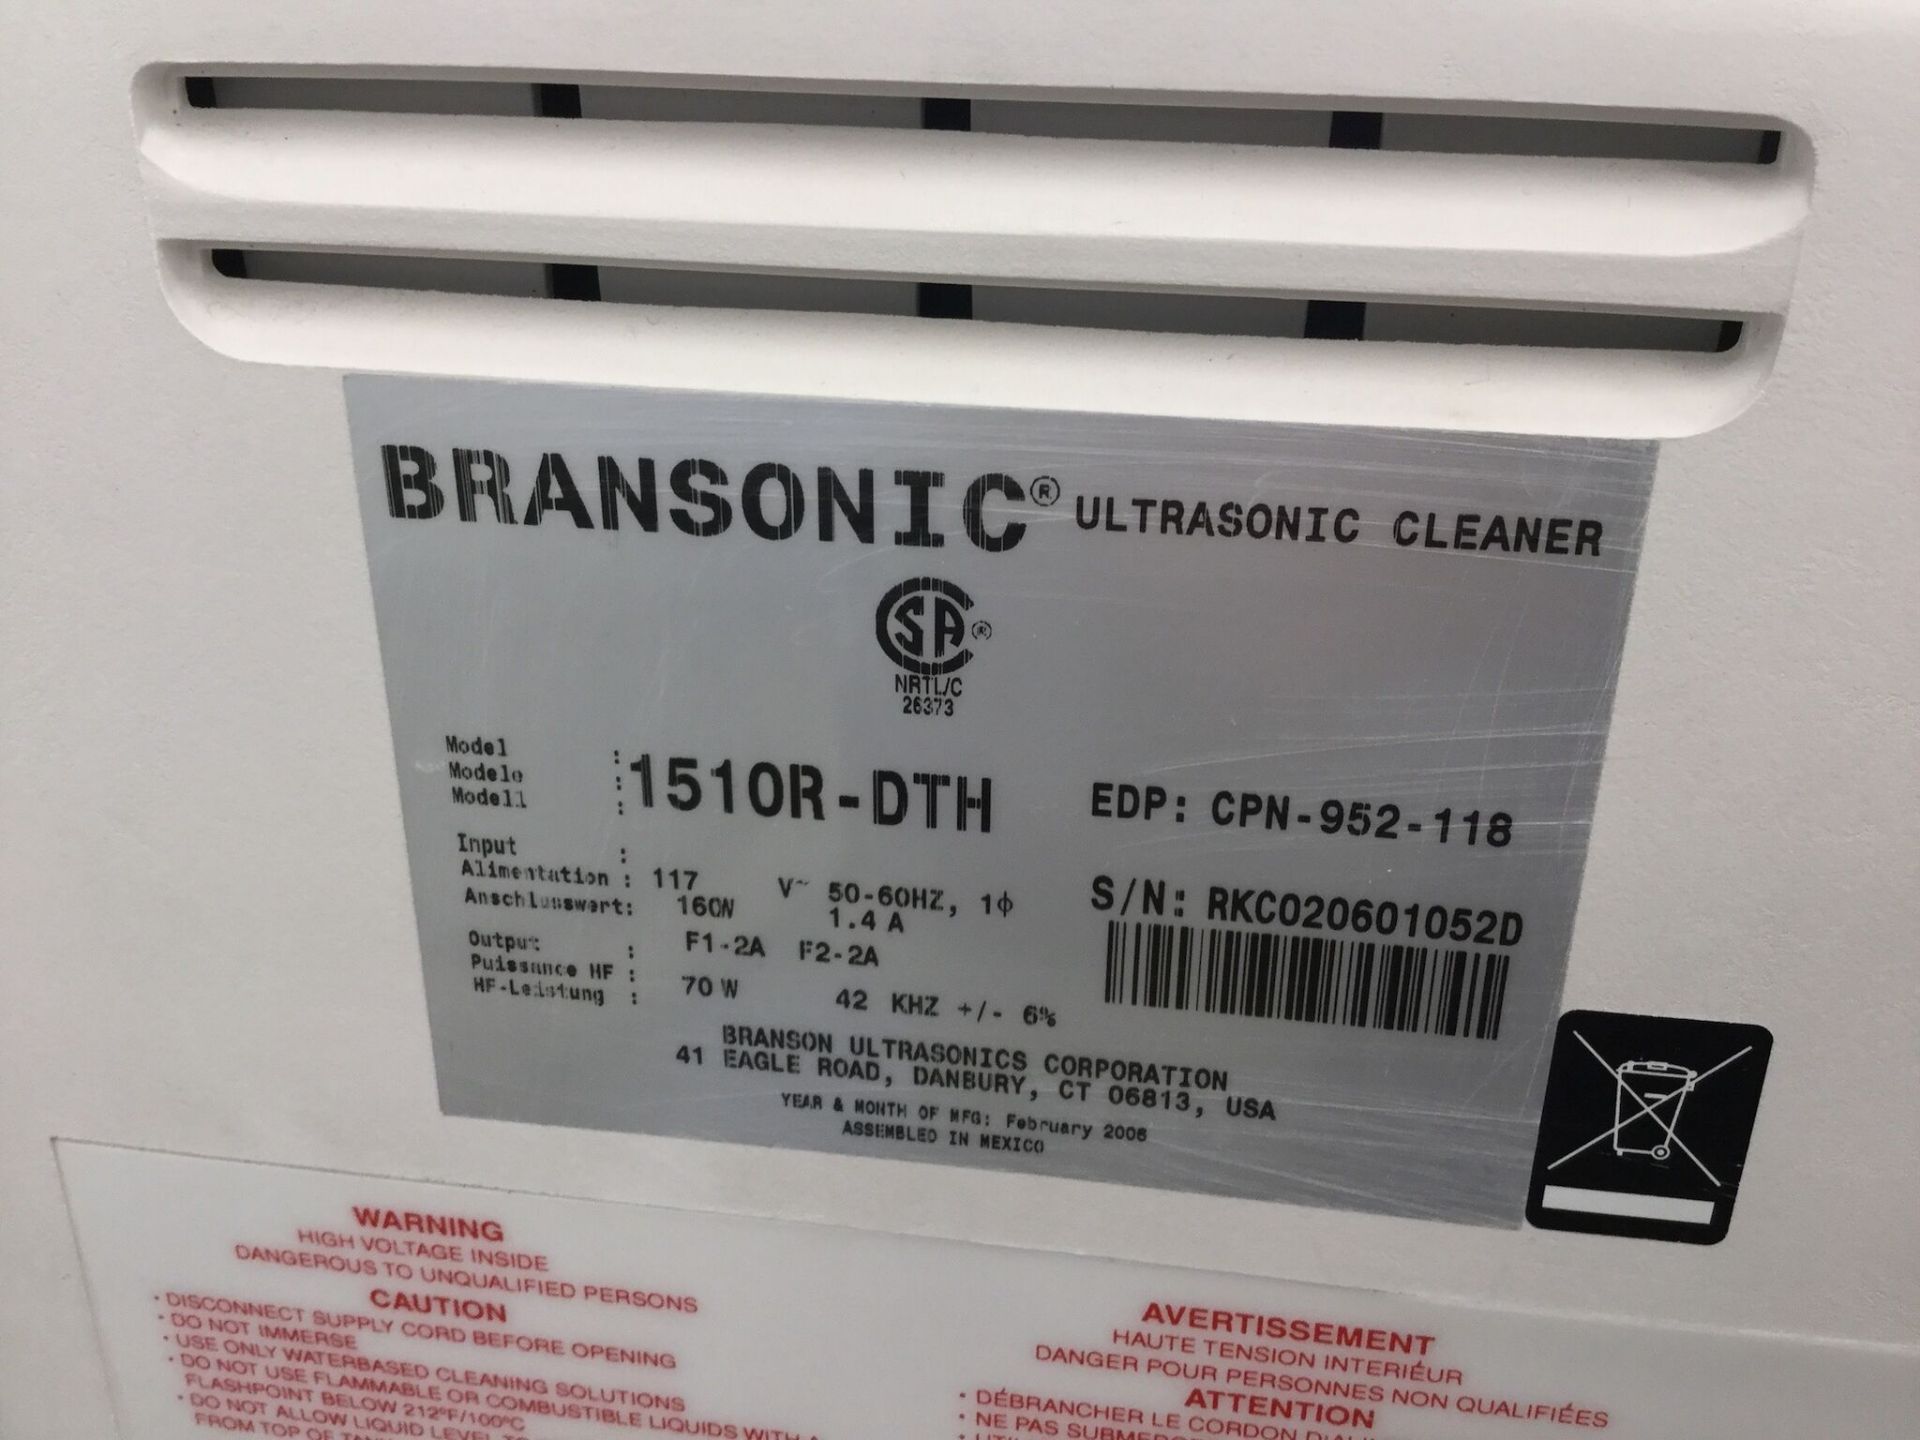 Brandon Model 1510R-DTH Ultrasonic Cleaner - Image 2 of 2